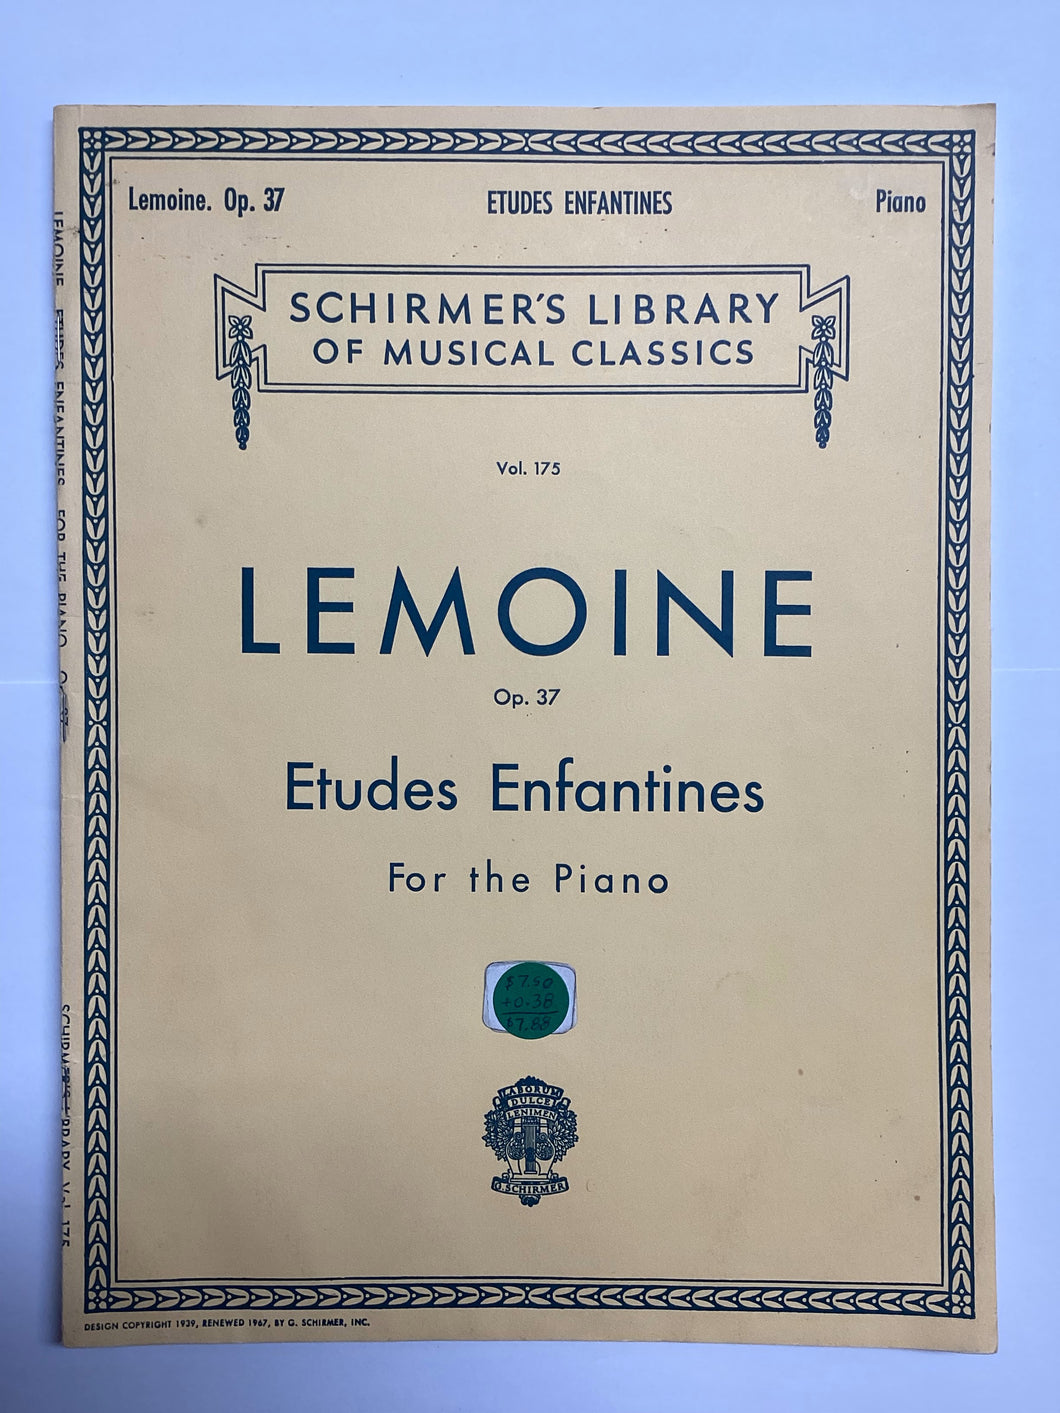 Etudes Enfantines For The Piano (Op. 37 - Vol. 175) - Lemoine